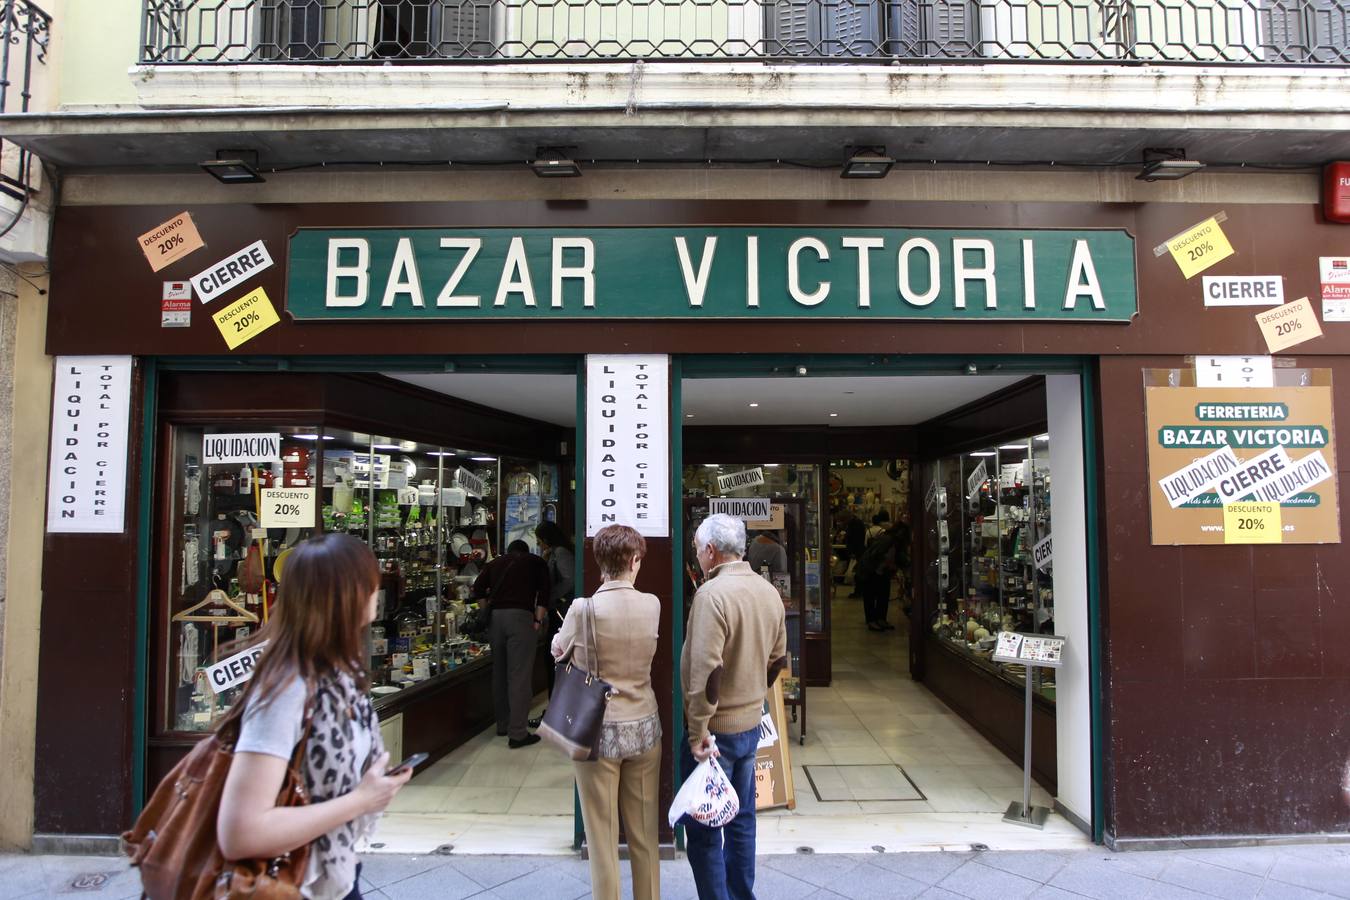 Bazar Victoria